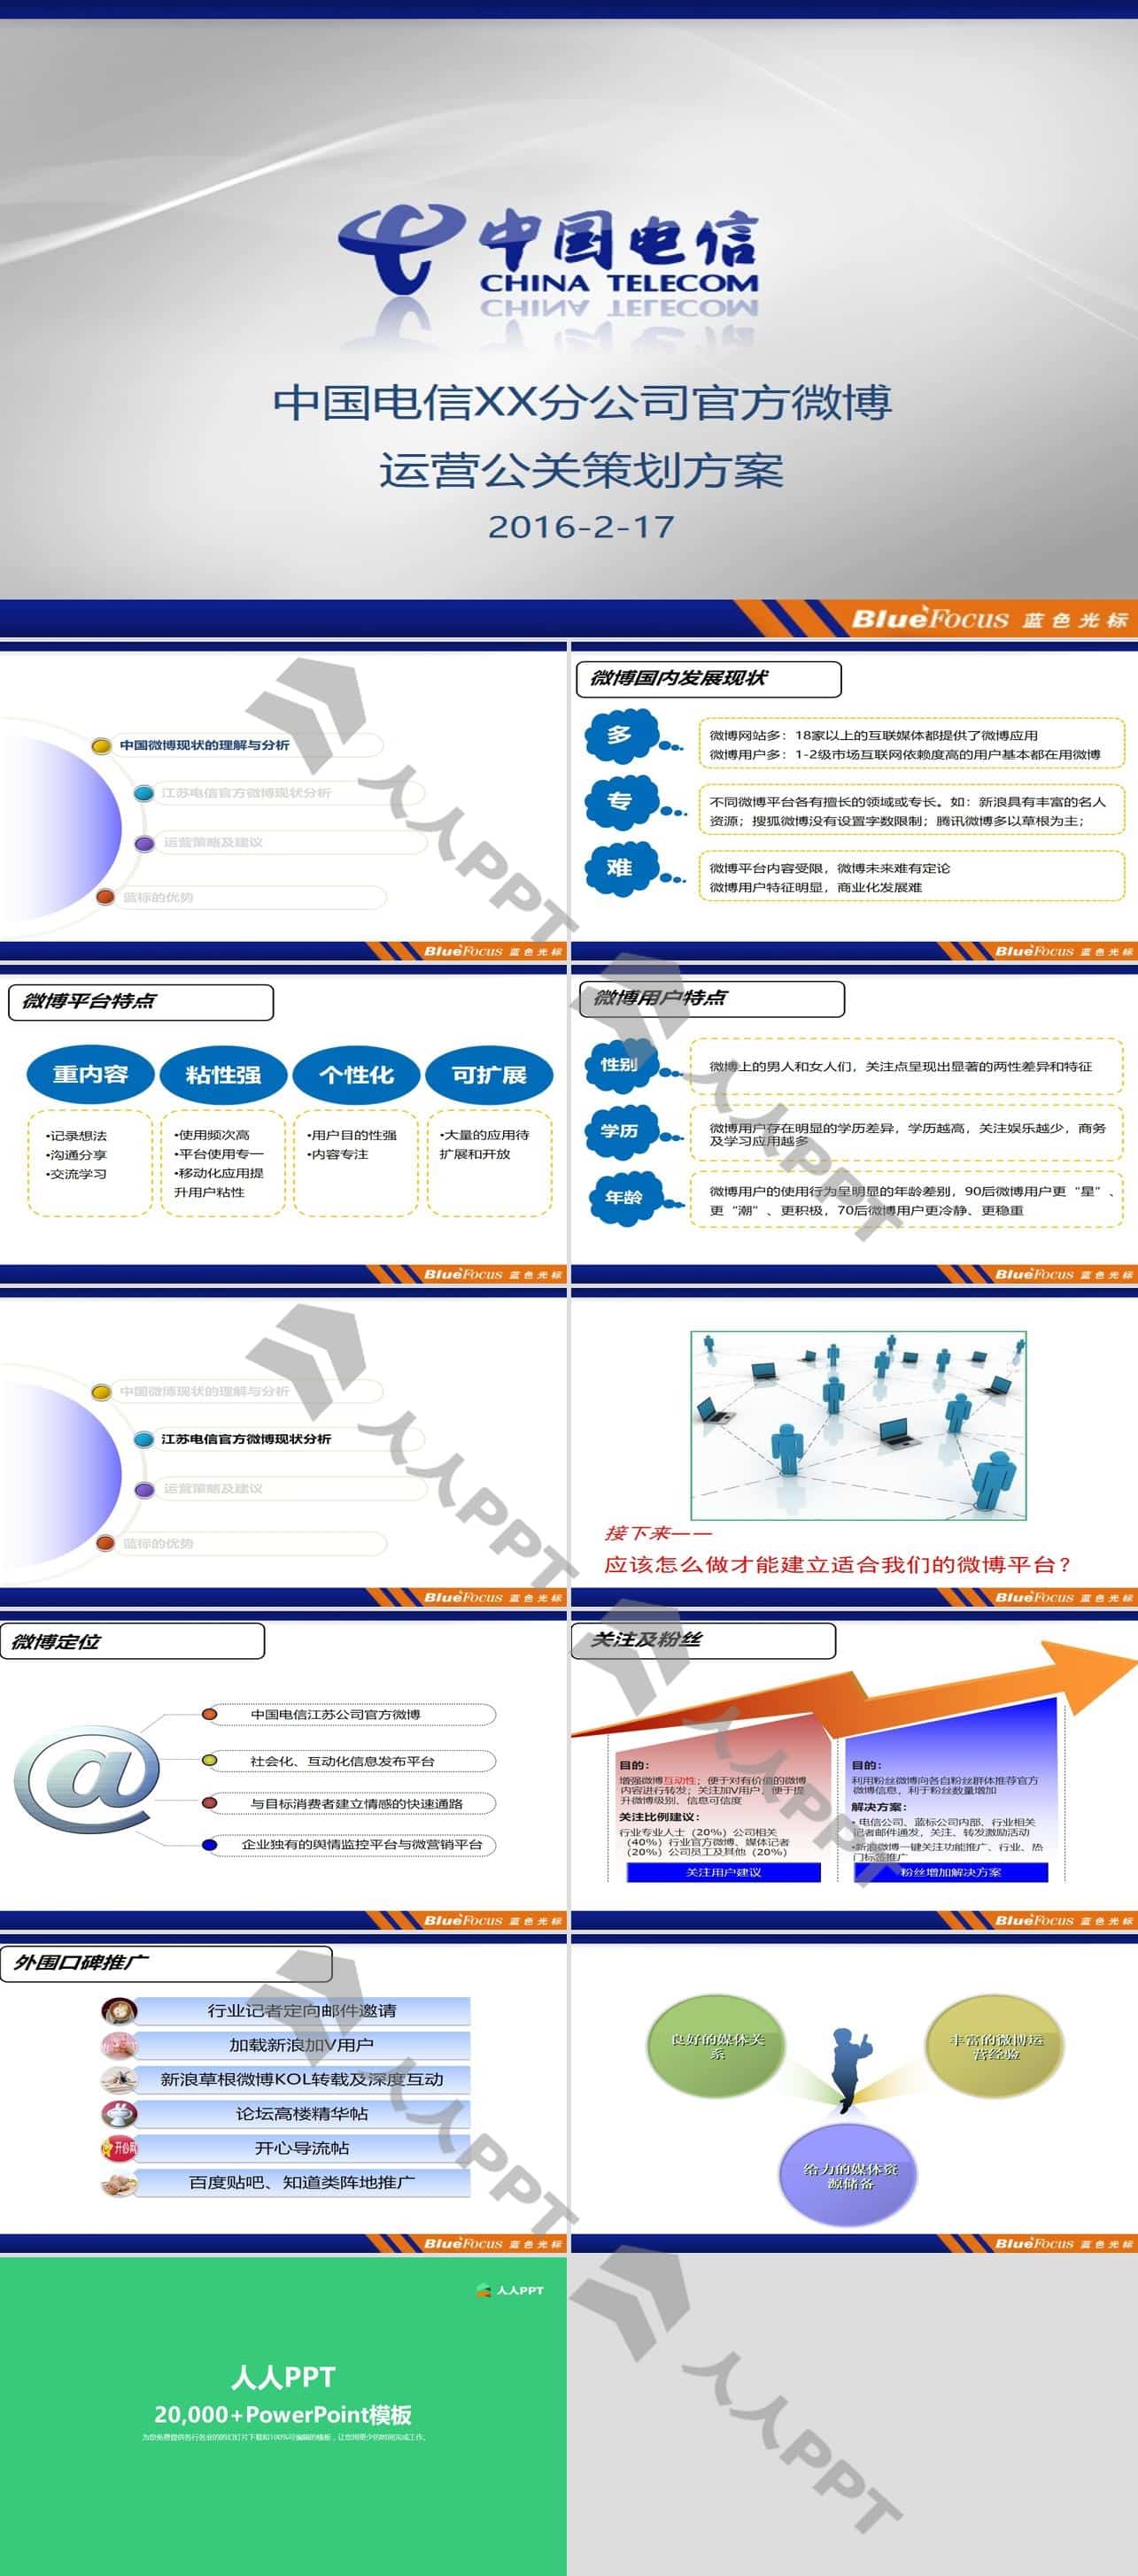 中国电信分公司微博运营策划方案PPT模板长图